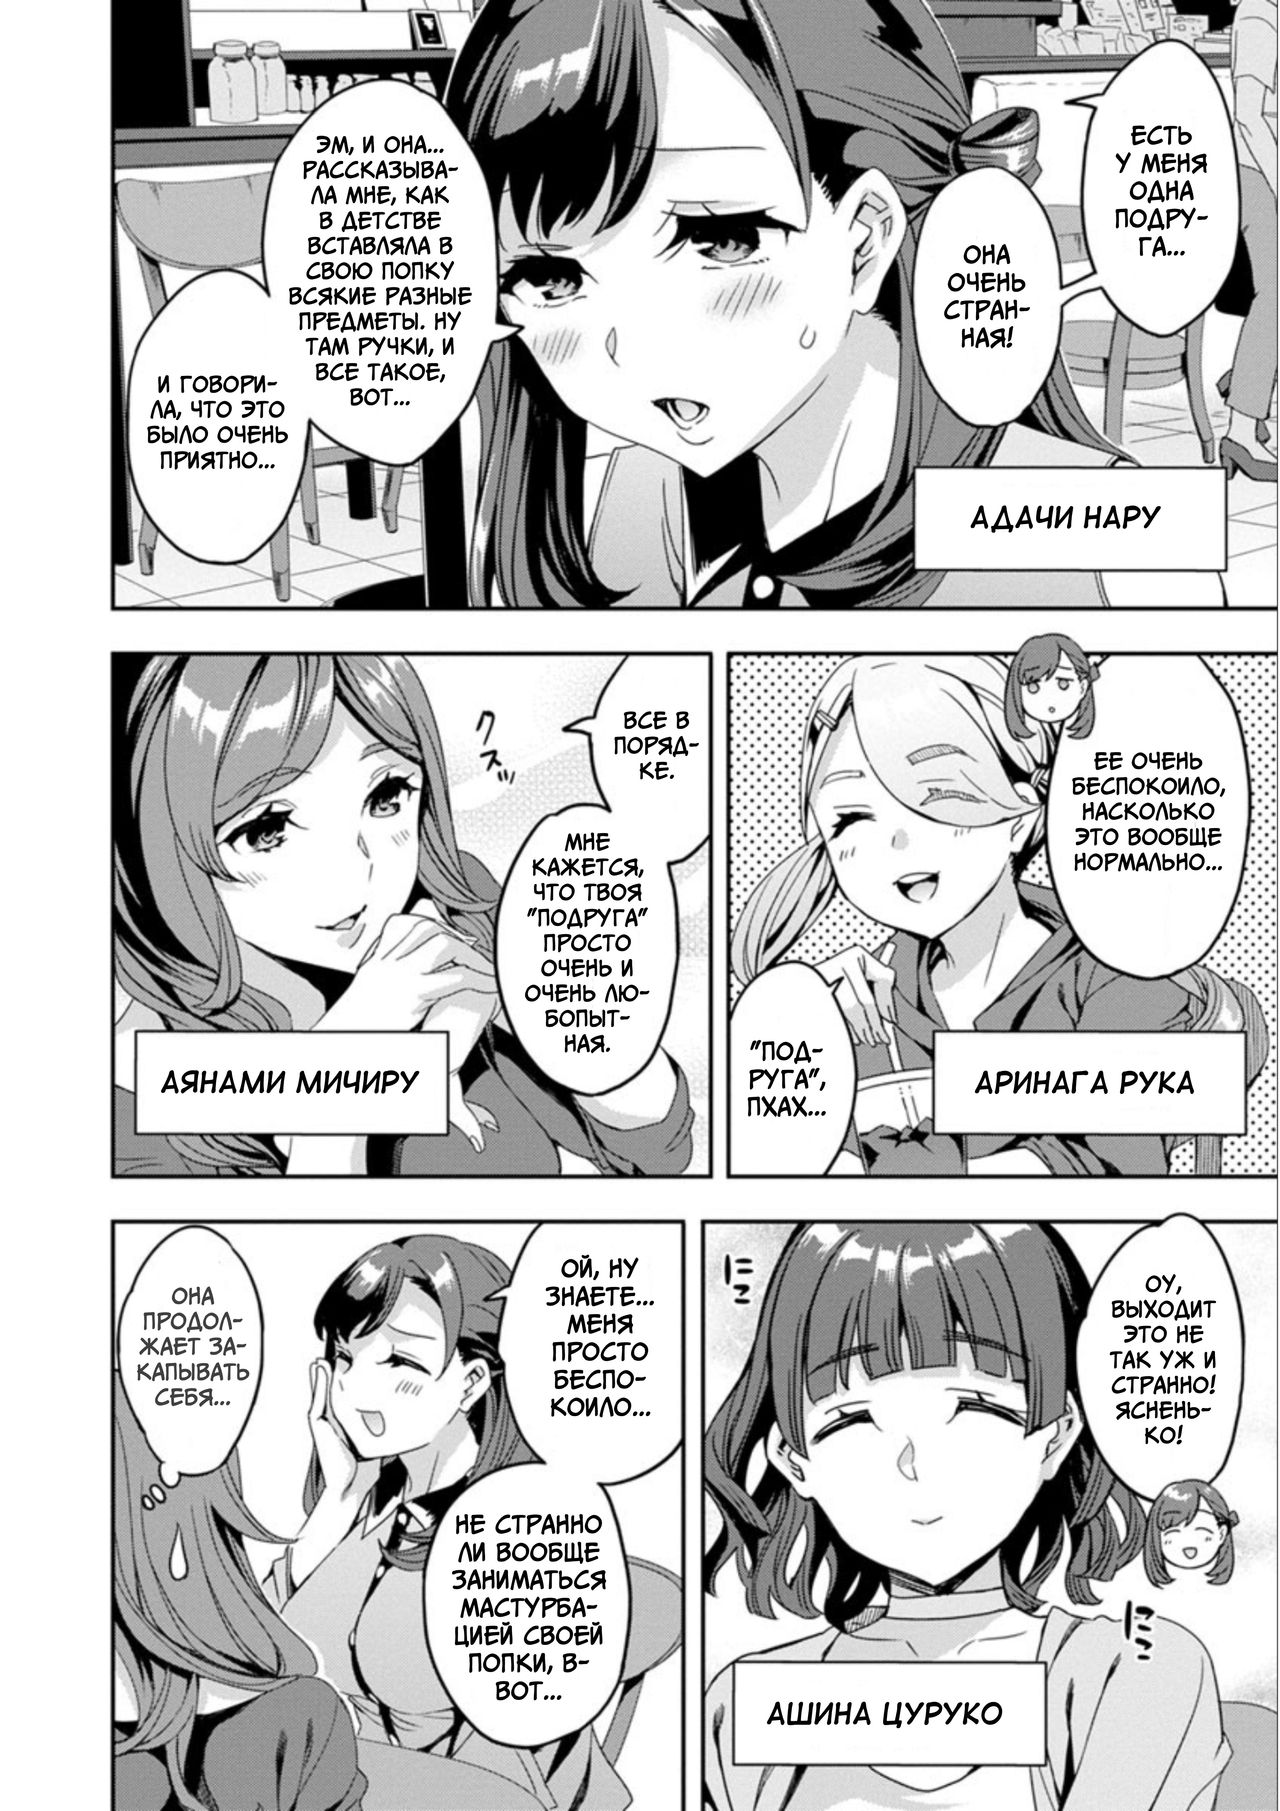 Shiritagari Jyoshi | Женщина, которая хочет знать побольше об анале! - Page  10 - IMHentai